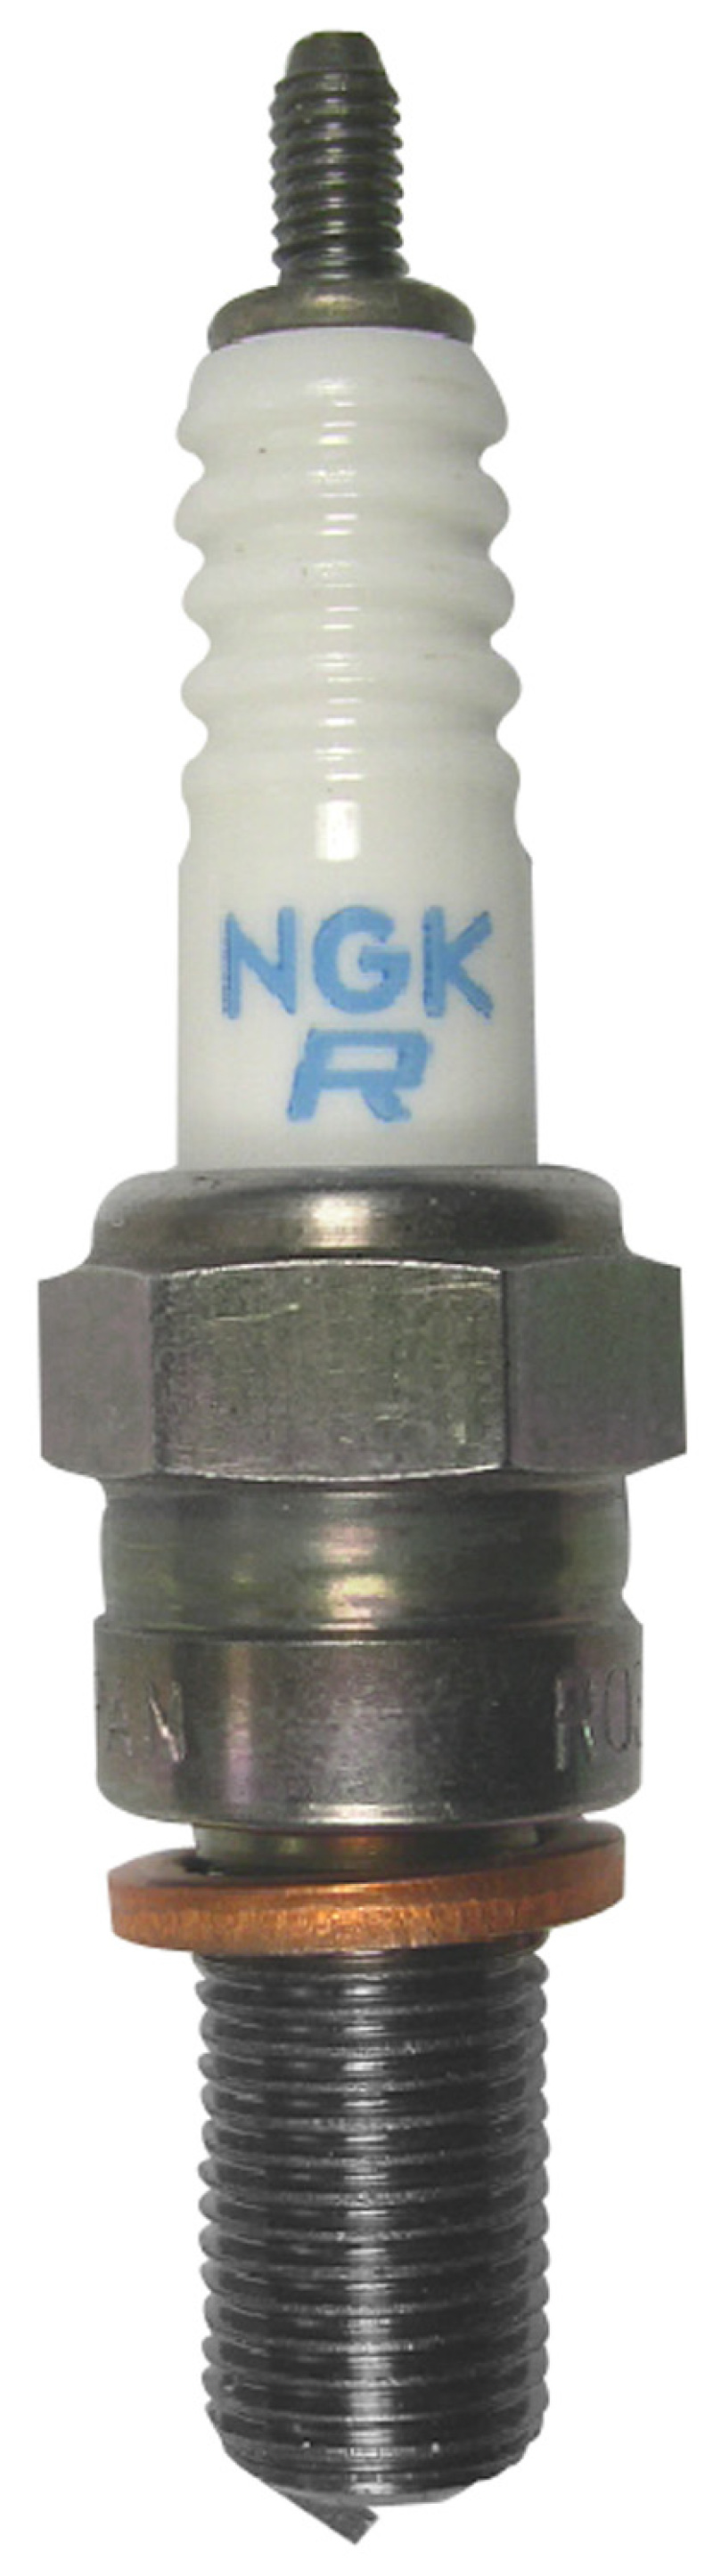 NGK Racing Spark Plug Box of 4 (R0406A-9) - 1481